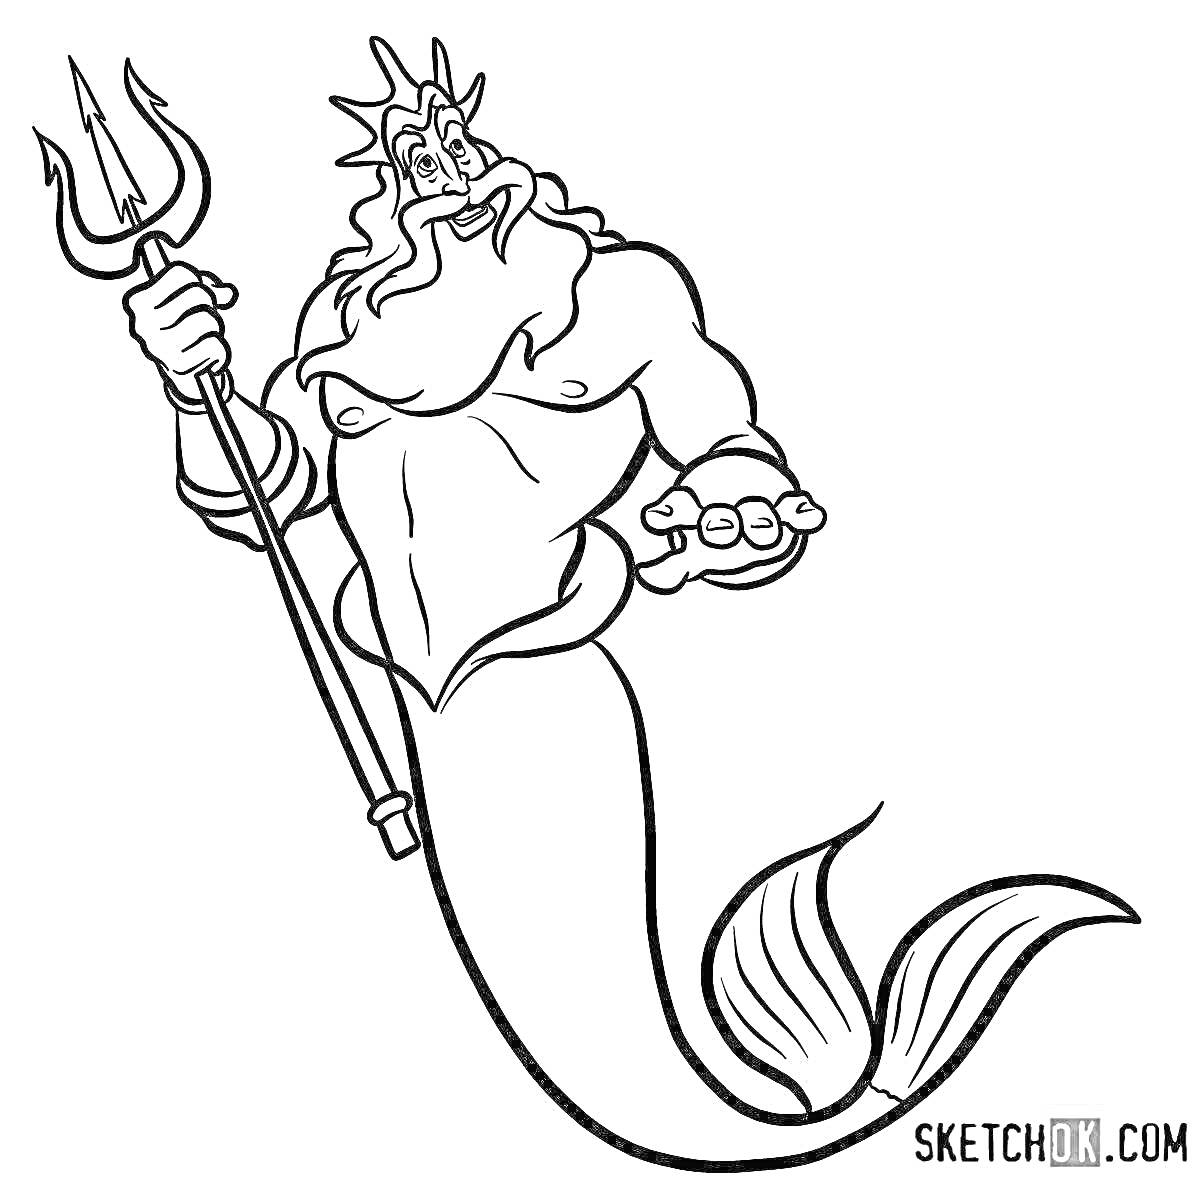 Раскраска Посейдон с трезубцем и рыбьим хвостом